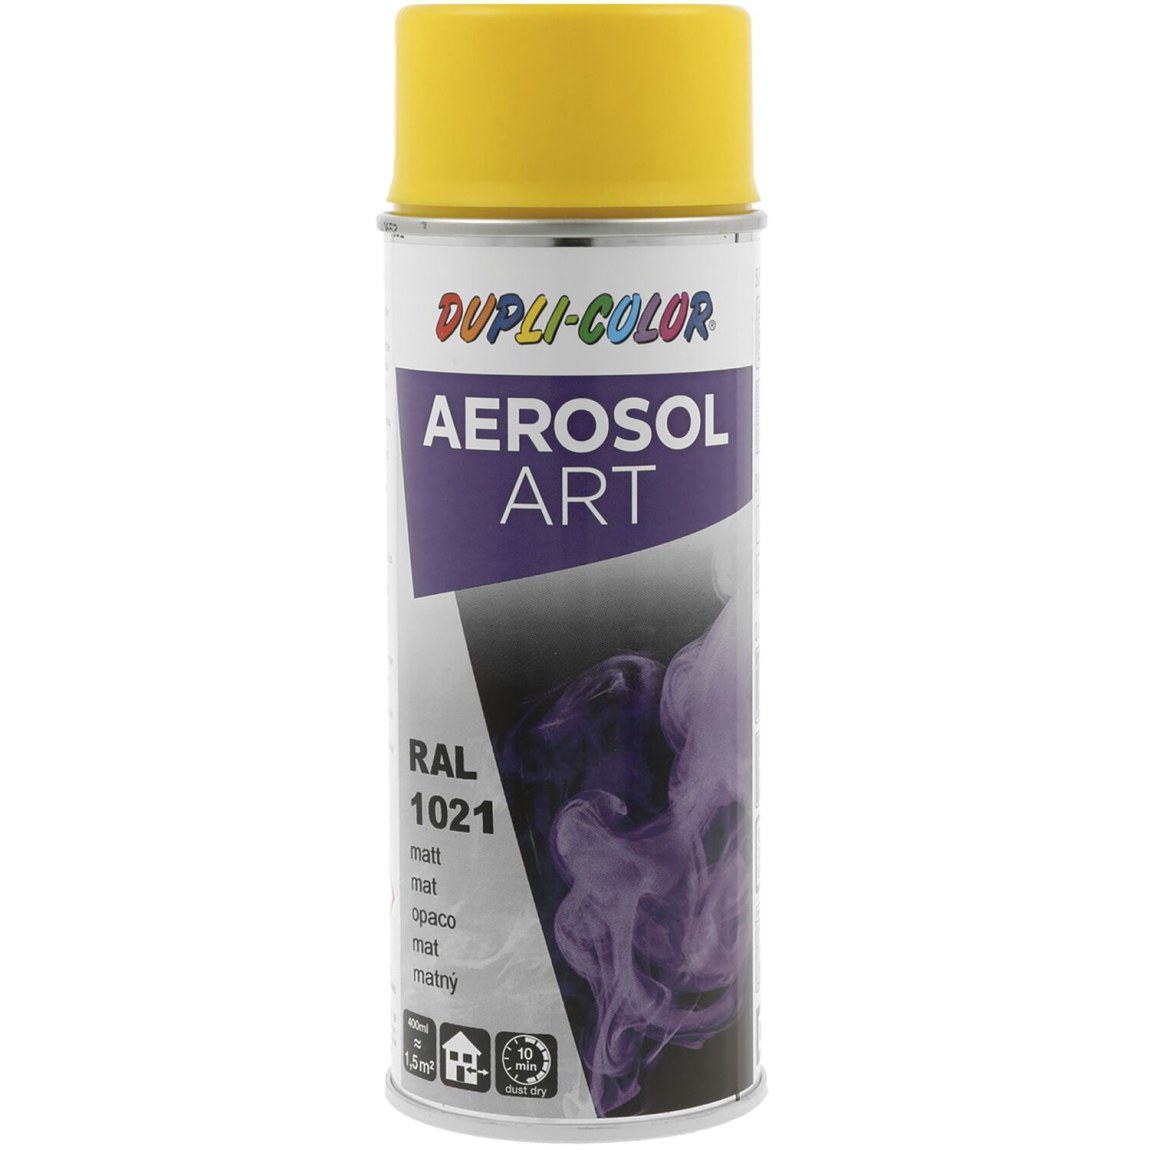 Dupli-Color Aerosol Art sprej 400 ml žlutá hořčičná hedv.mat / RAL 1021 - Železářství Chemicko-technické výrobky Technické aerosoly Lak ve Spreji